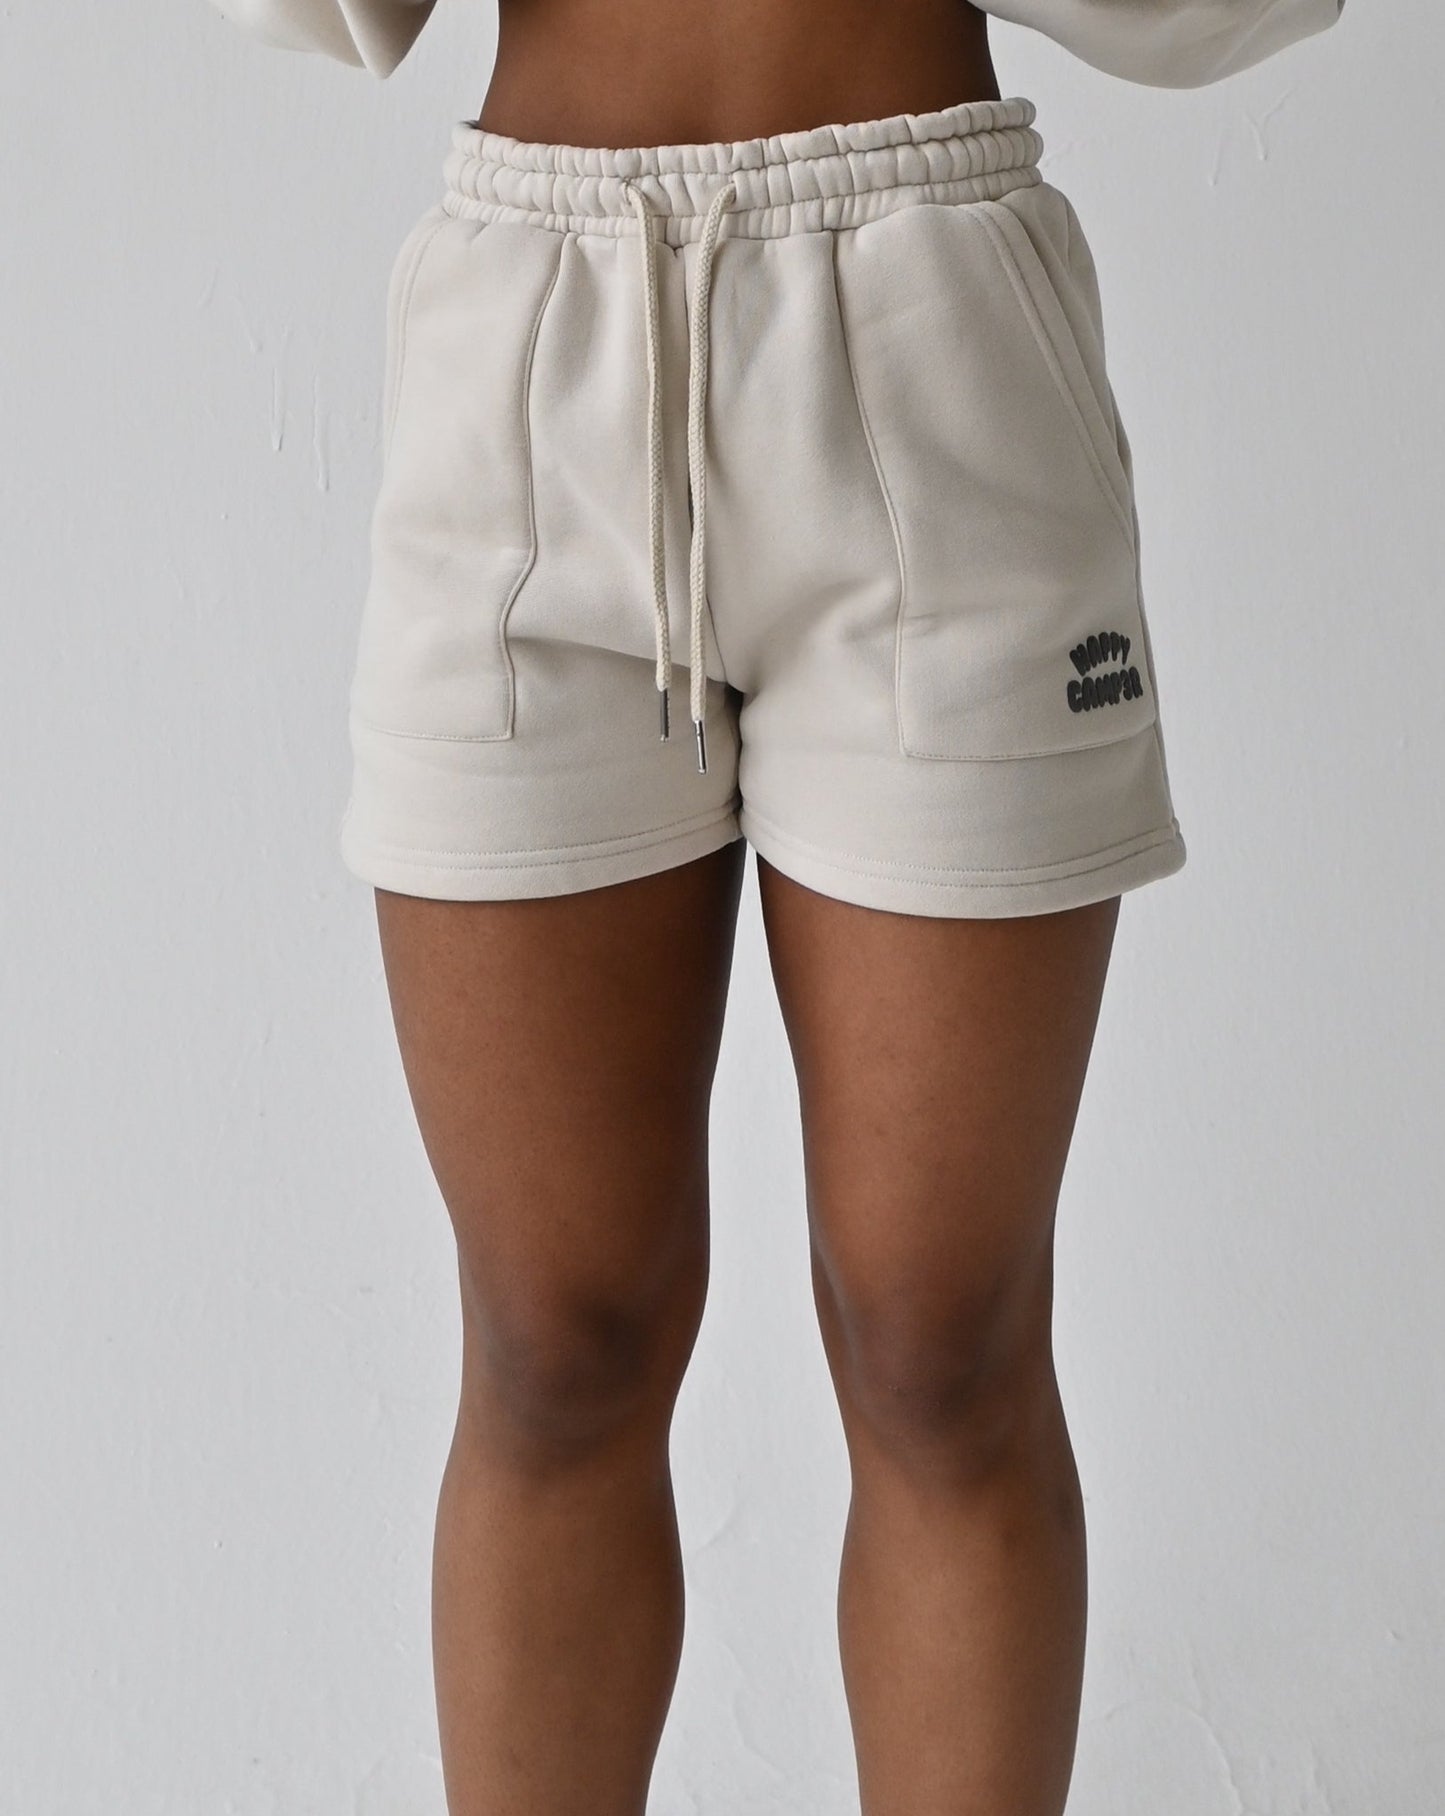 Puff Series II Shorts - Beige